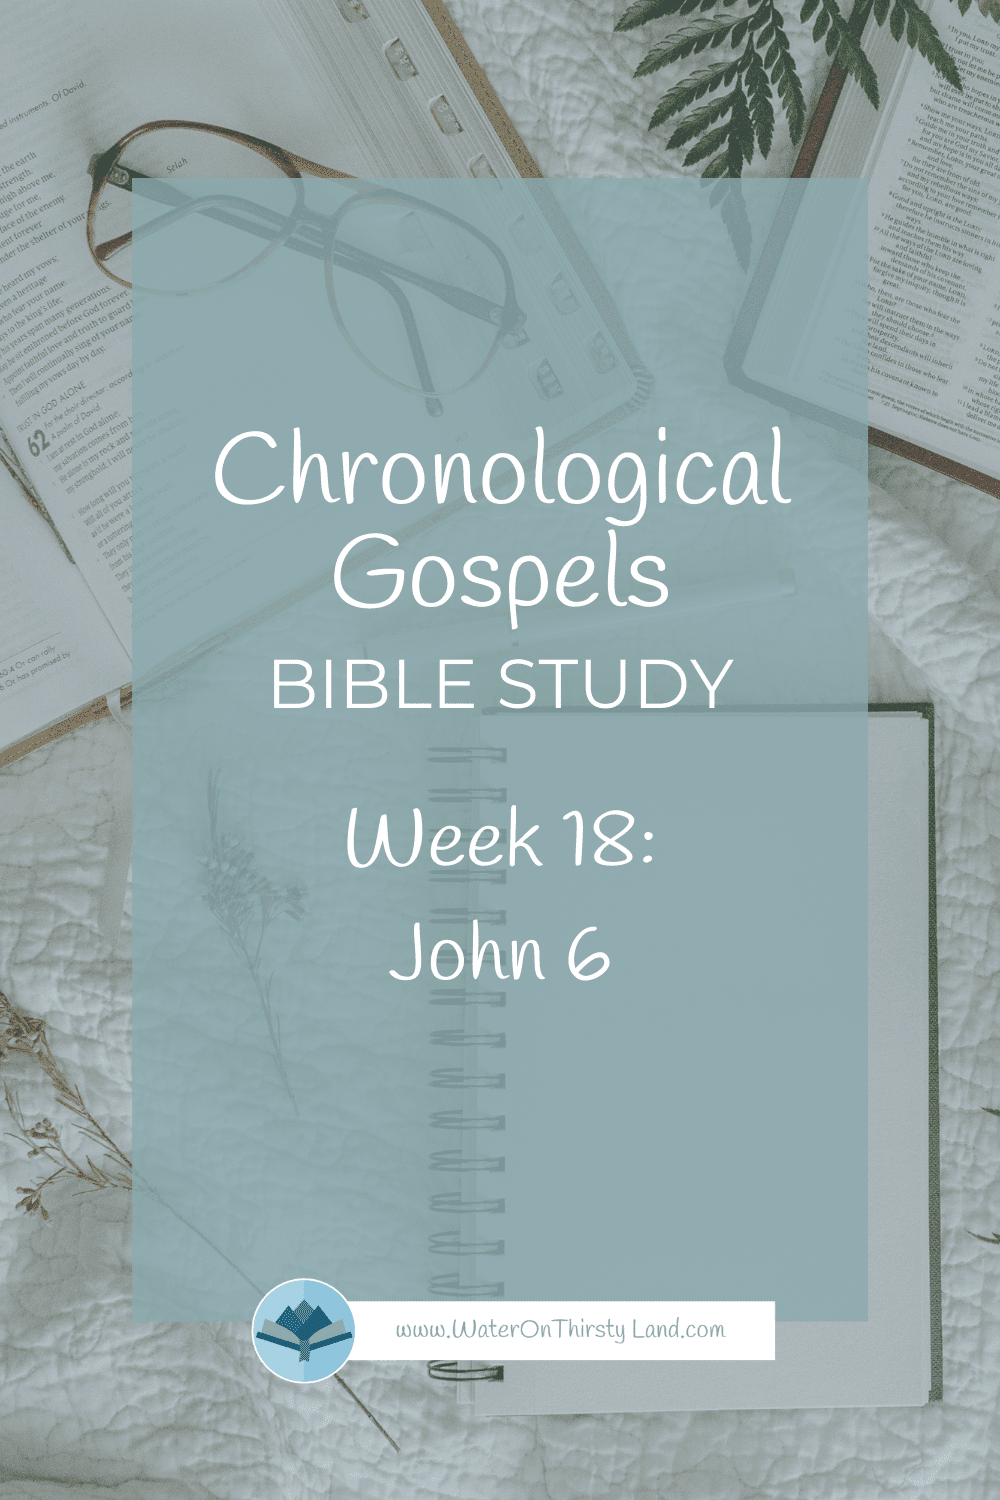 Chronological Gospels Week 18 John 6